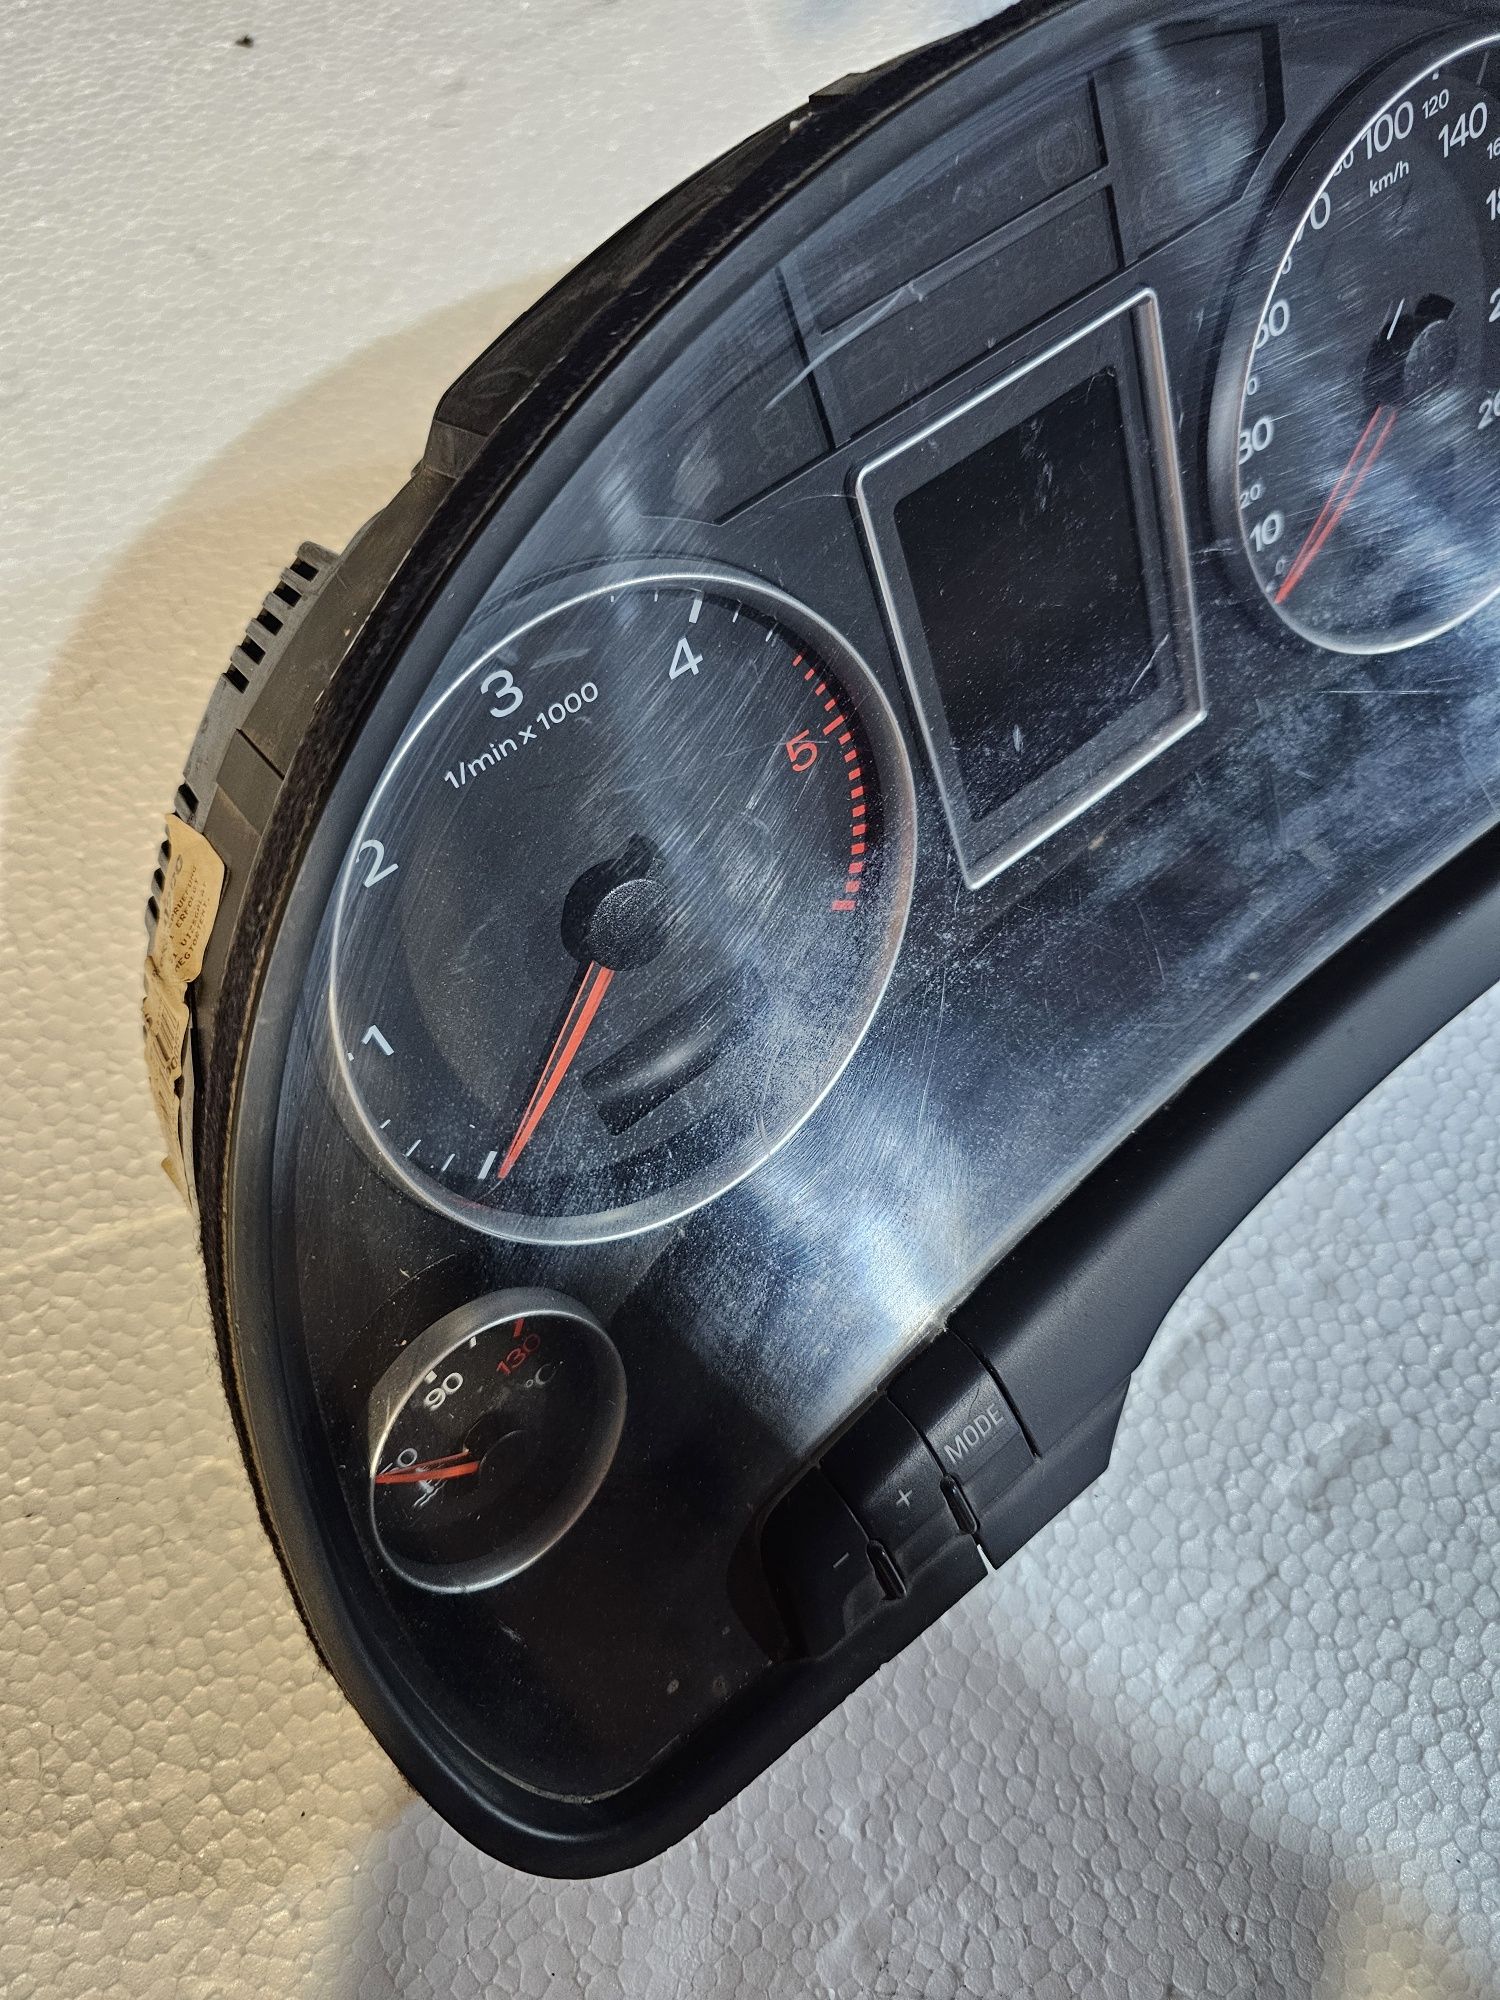 Ceasuri de bord originale Audi A4 B7 diesel 2004 - 2008

Nu le cunosc